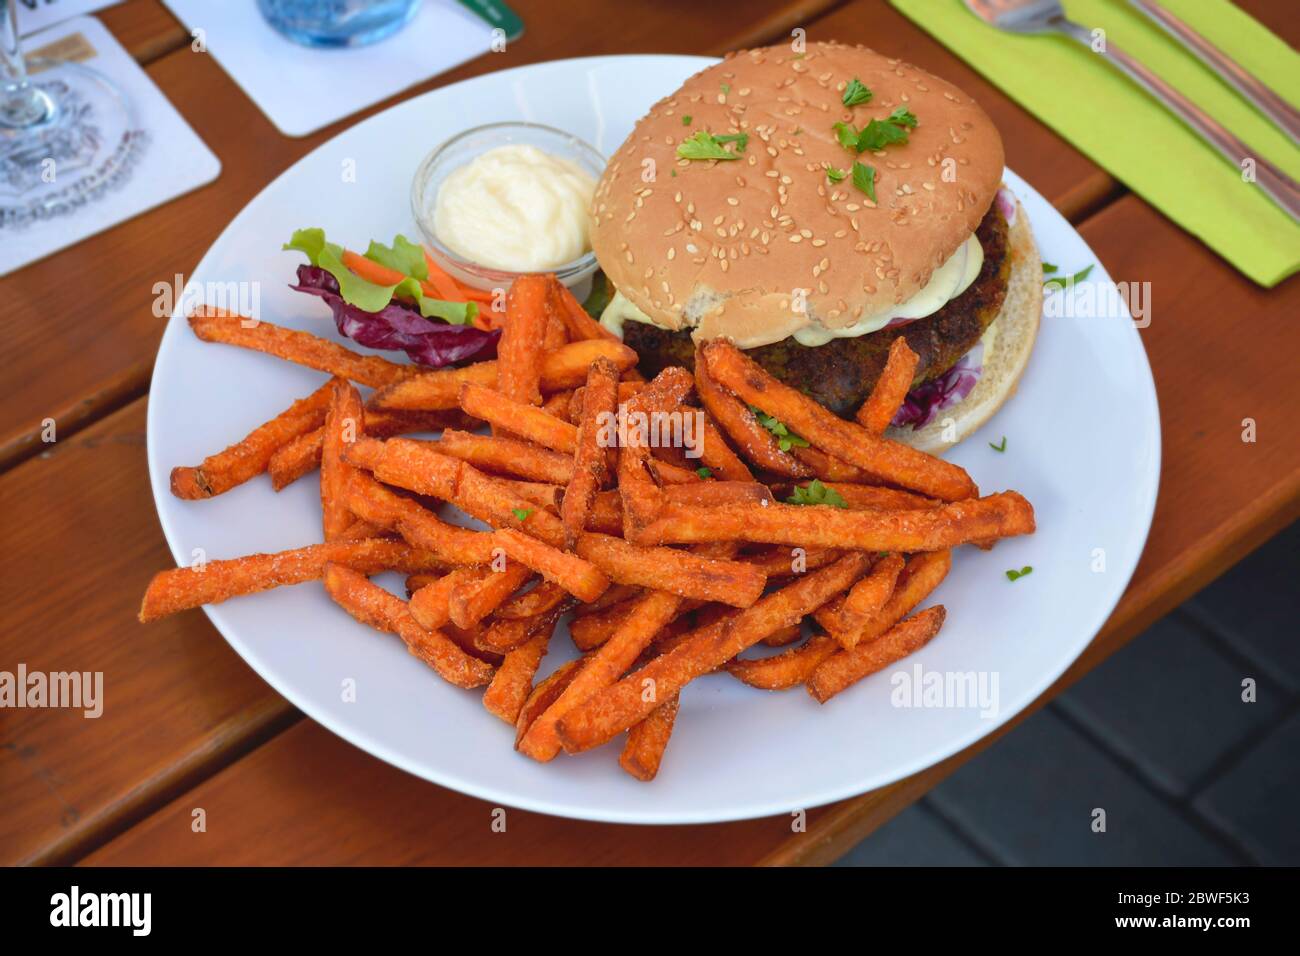 Hamburger végétarien sain avec frites de patate douce servi avec un peu de laitue sur une assiette. Banque D'Images